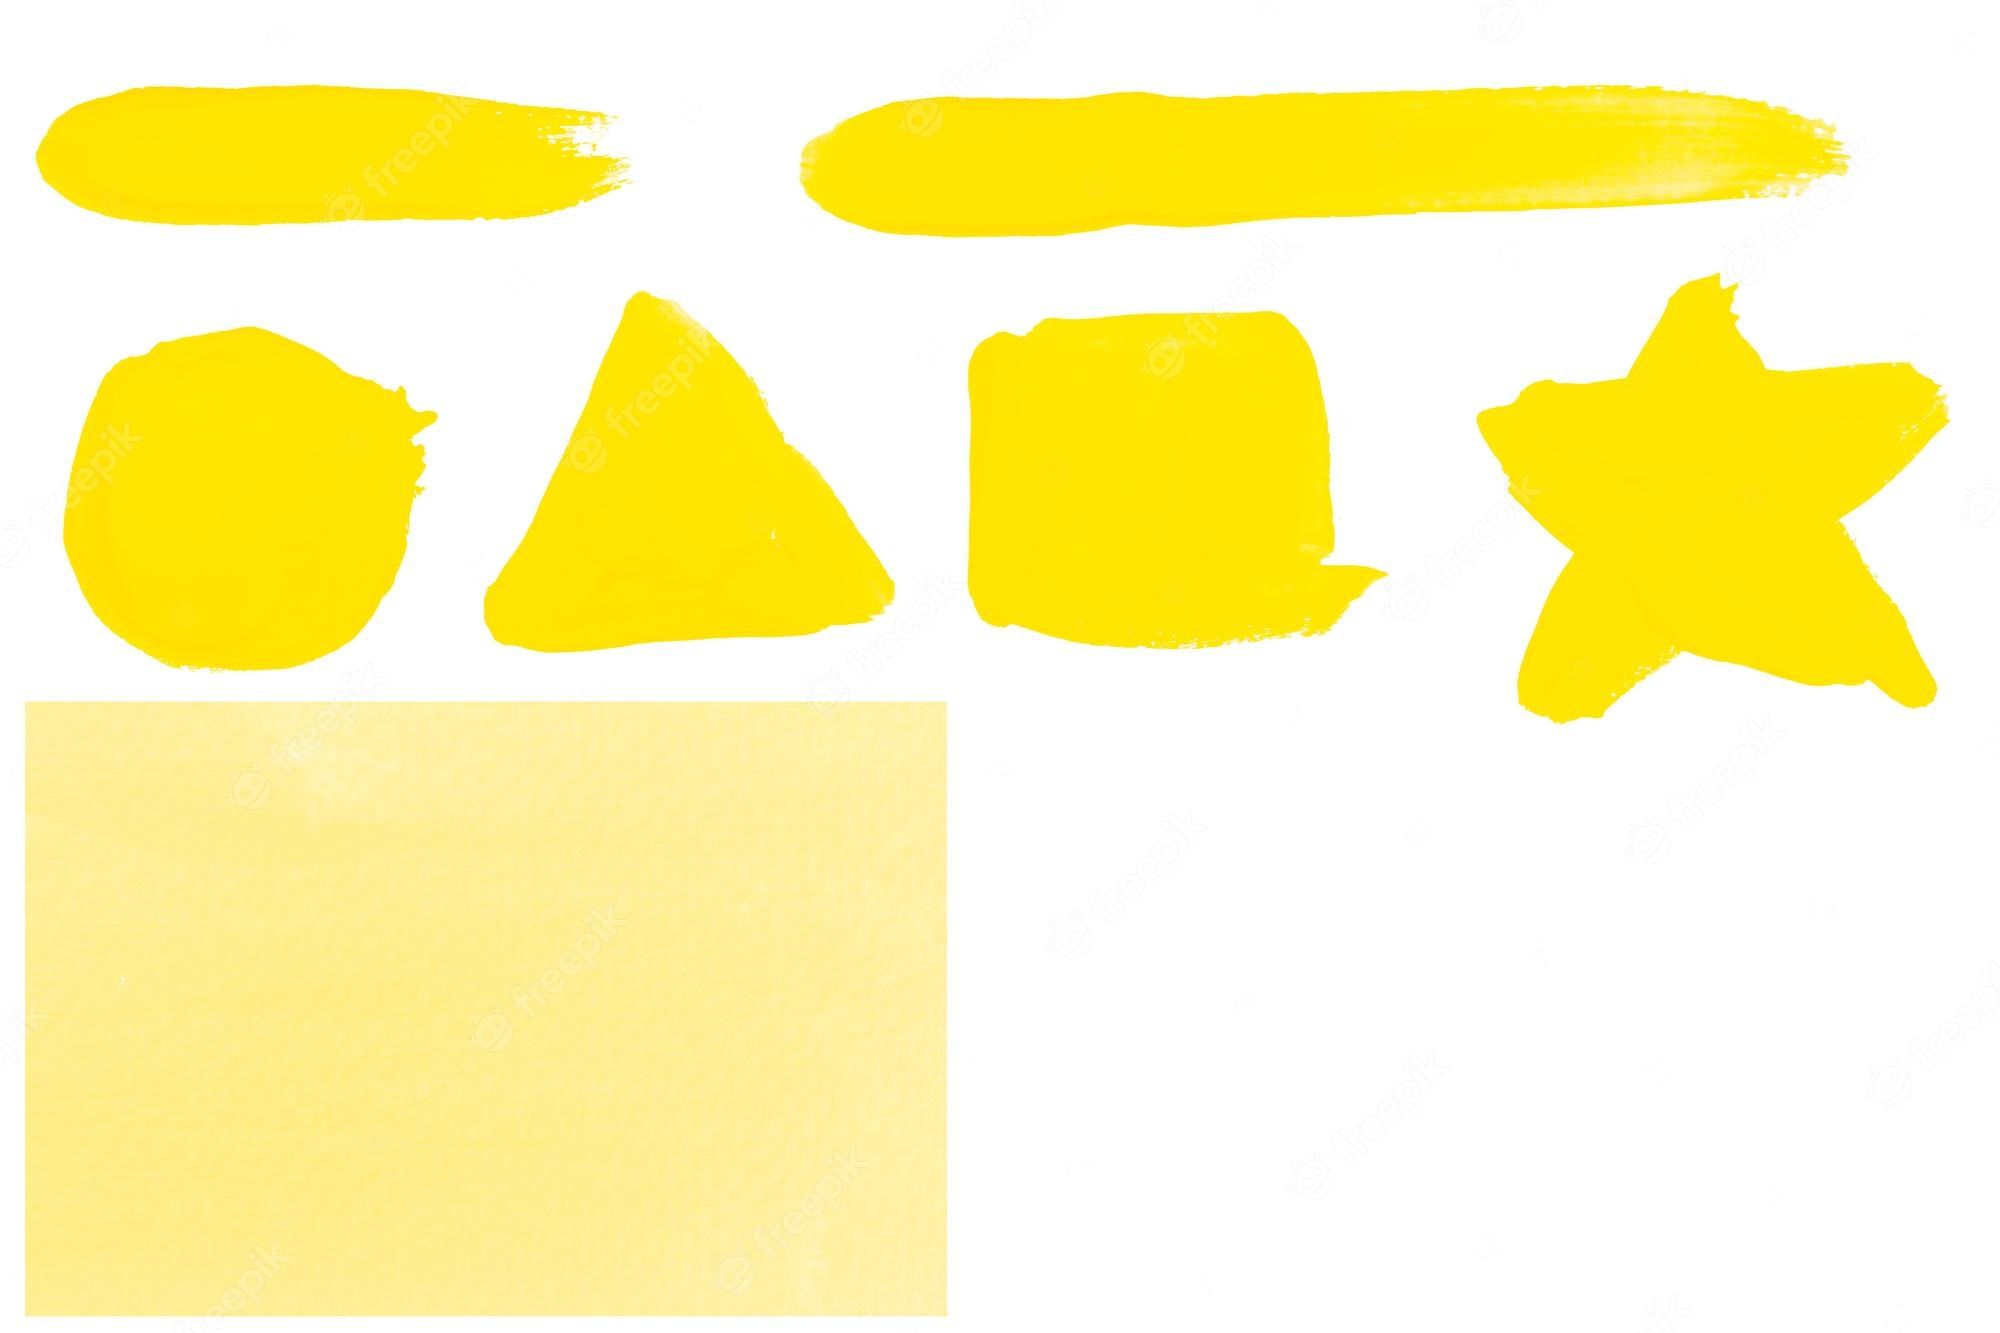  Zeichnen Hintergrundbild 2000x1333. Gelbe farbe papier zeichnen auf hintergrund isoliert